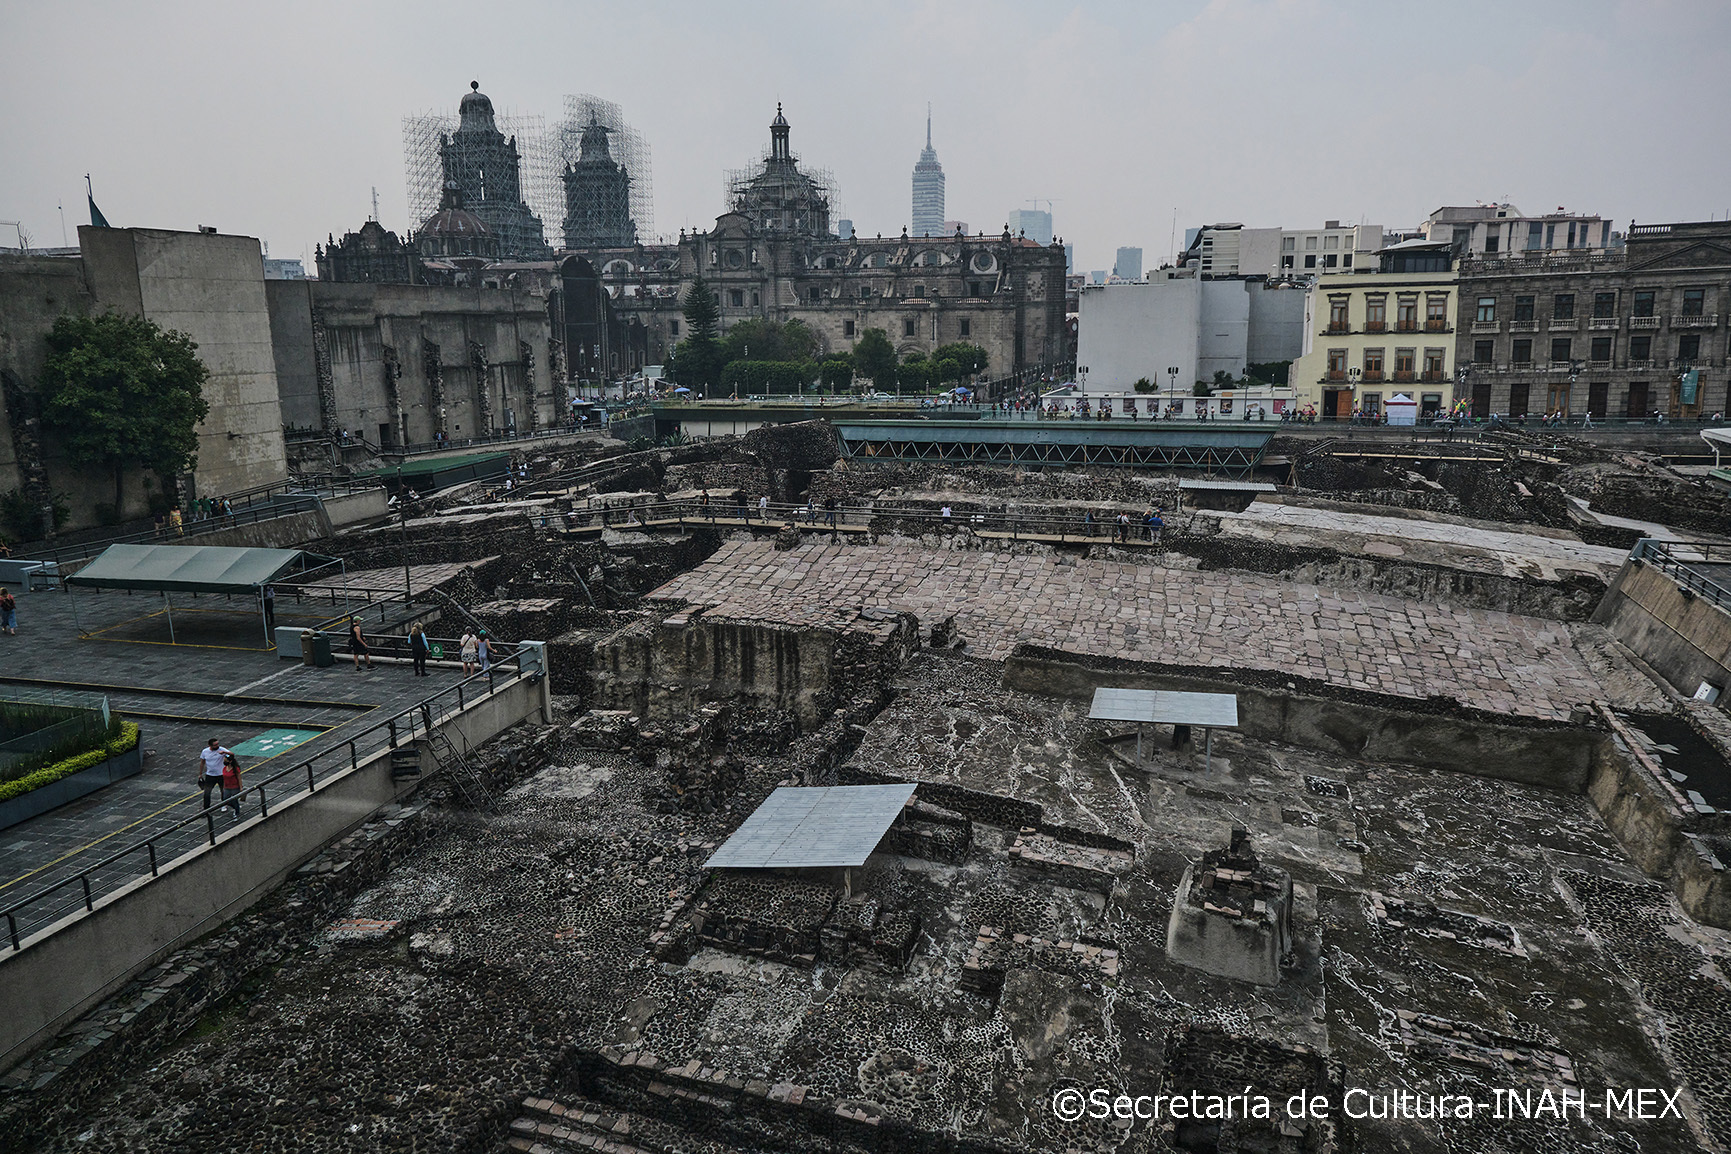 アステカ首都テノチティトラン（現メキシコシティ）中央に建てられた大神殿「テンプロ・マヨール」